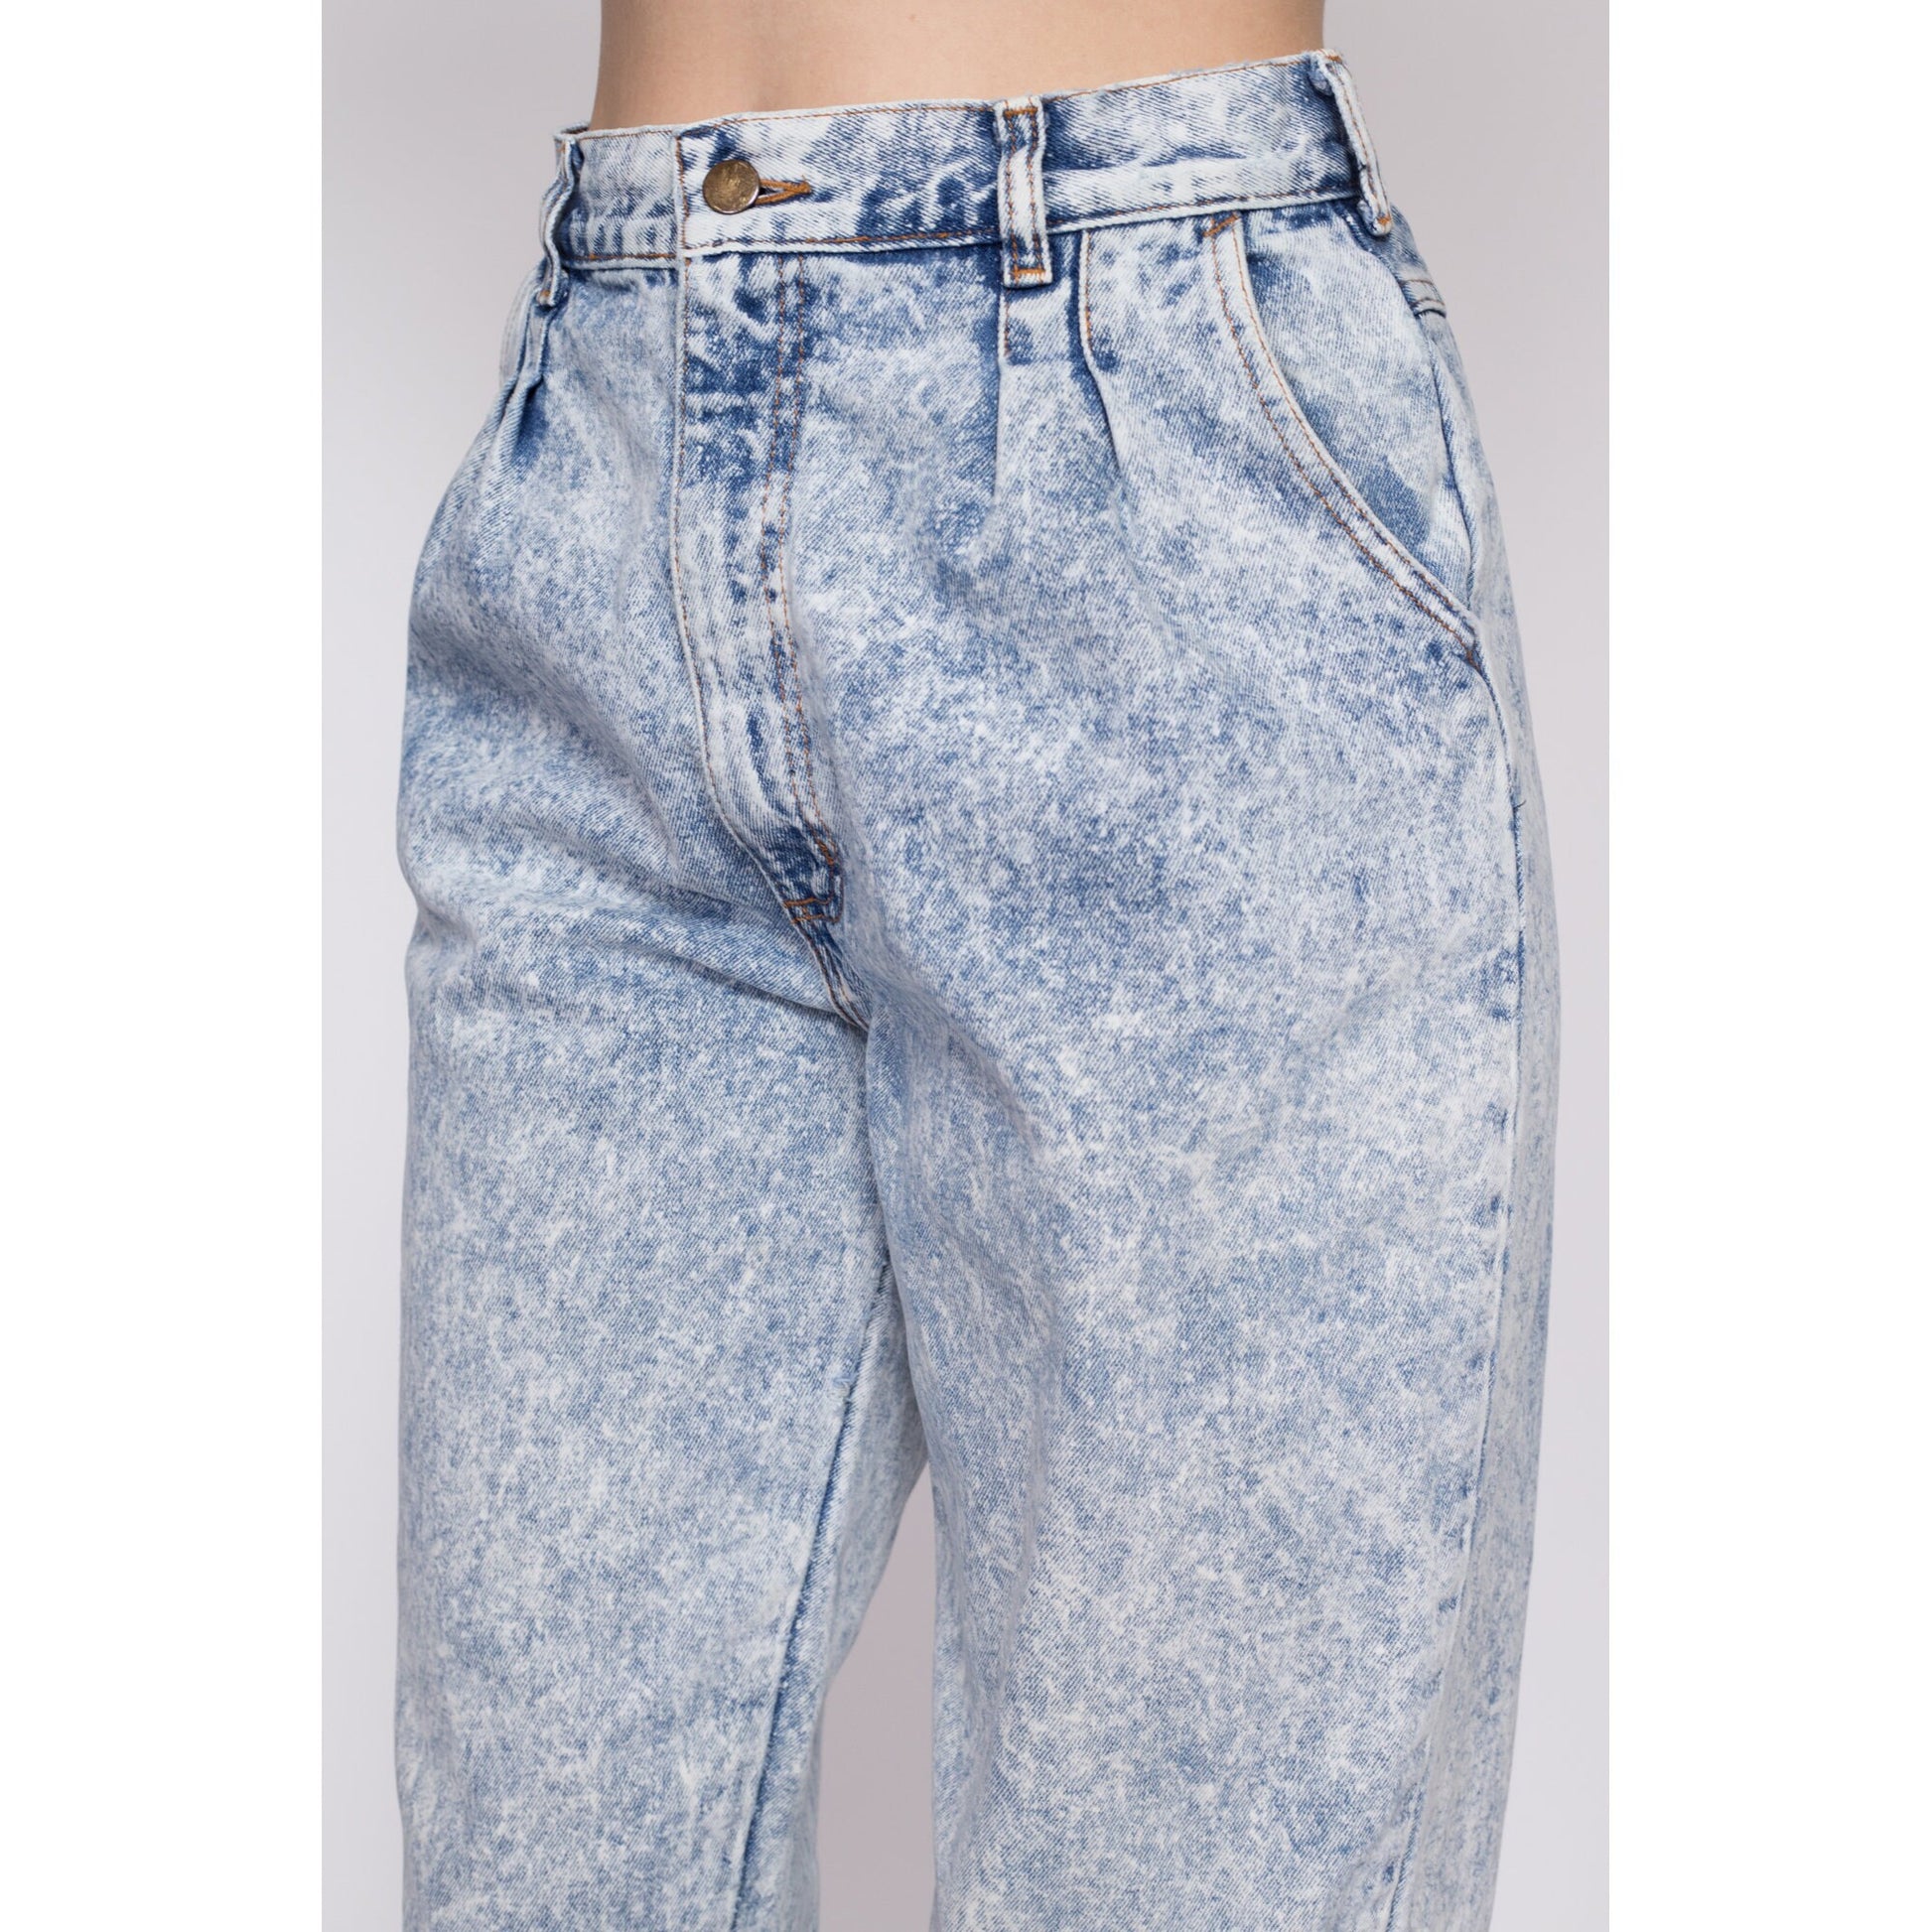 Medium 80s Acid Wash High Waisted Jeans 28.5" | Vintage Pleated Denim Tapered Leg Mom Jeans